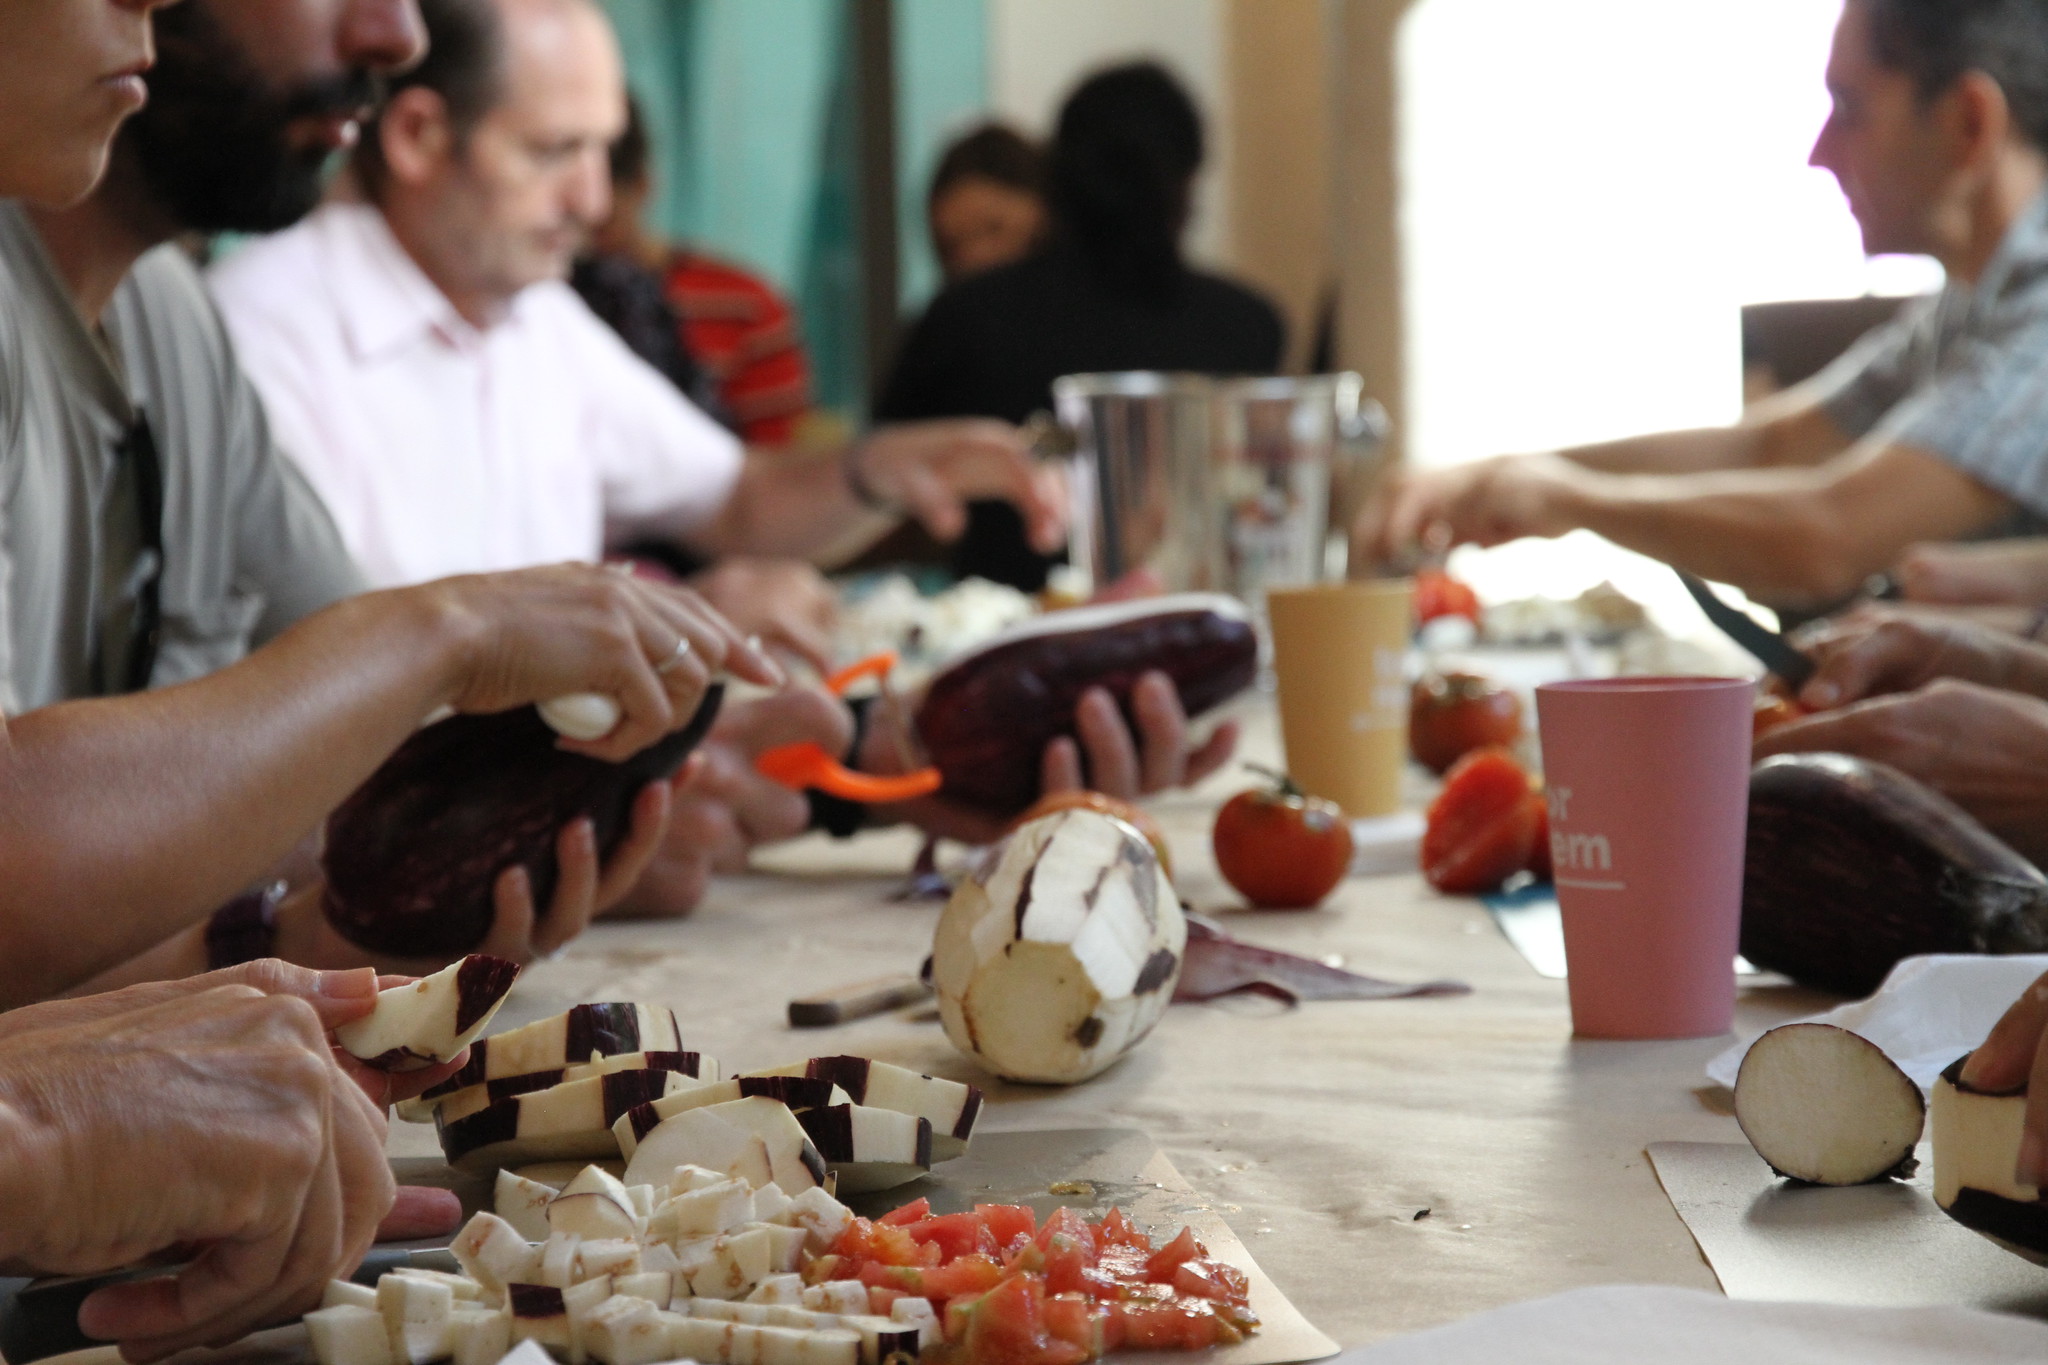 Imatge dels participants en ToNoWaste a la taula tallant albergines i tomaques